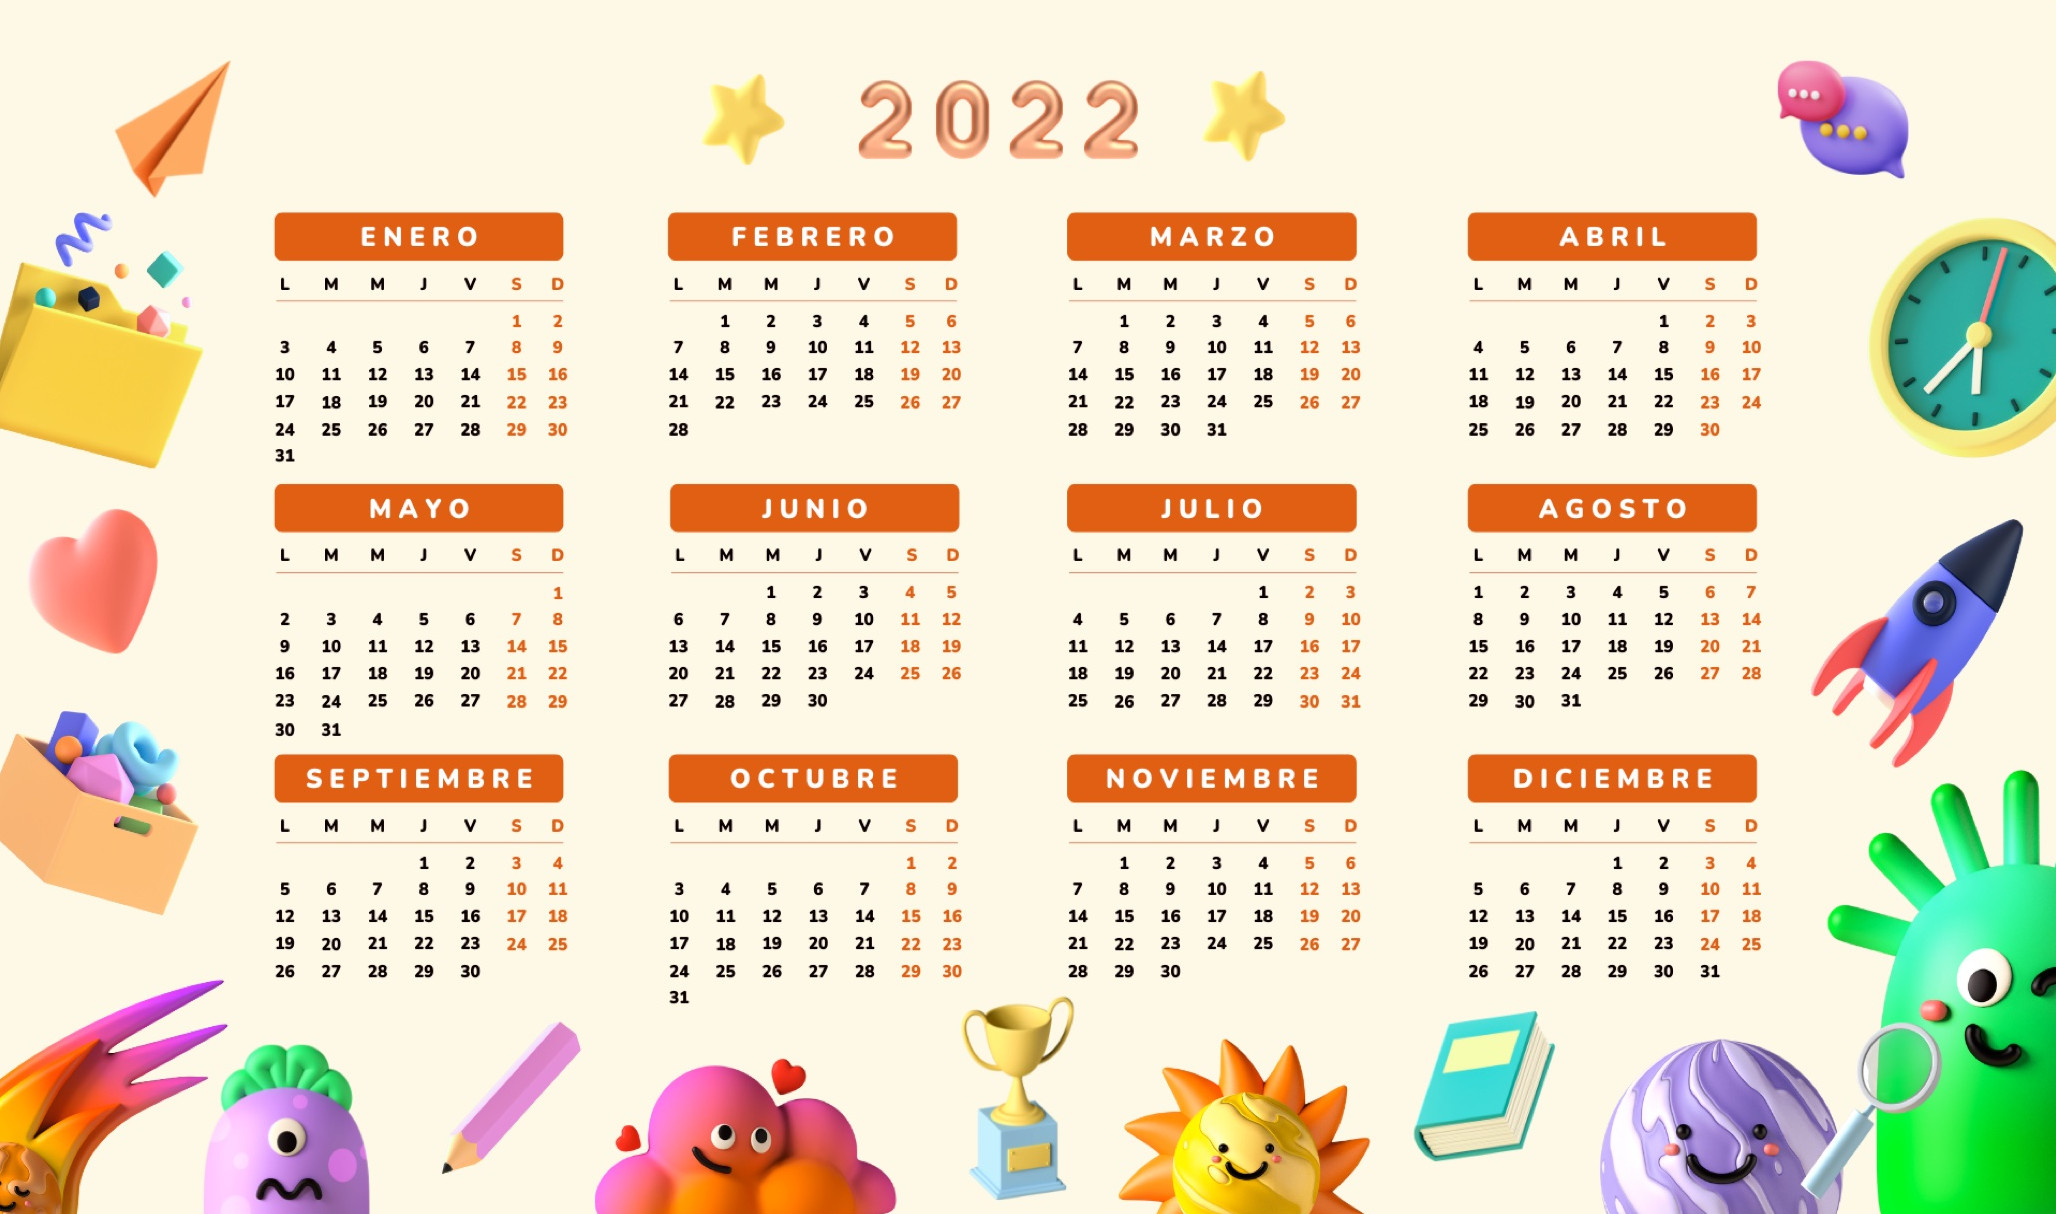 imagen de un calendario del año 2022 en el que aparecen los 12 meses sobre un fondo naranja y diversas ilustraciones divertidas y que hacen alusión a actividades y objetos juveniles